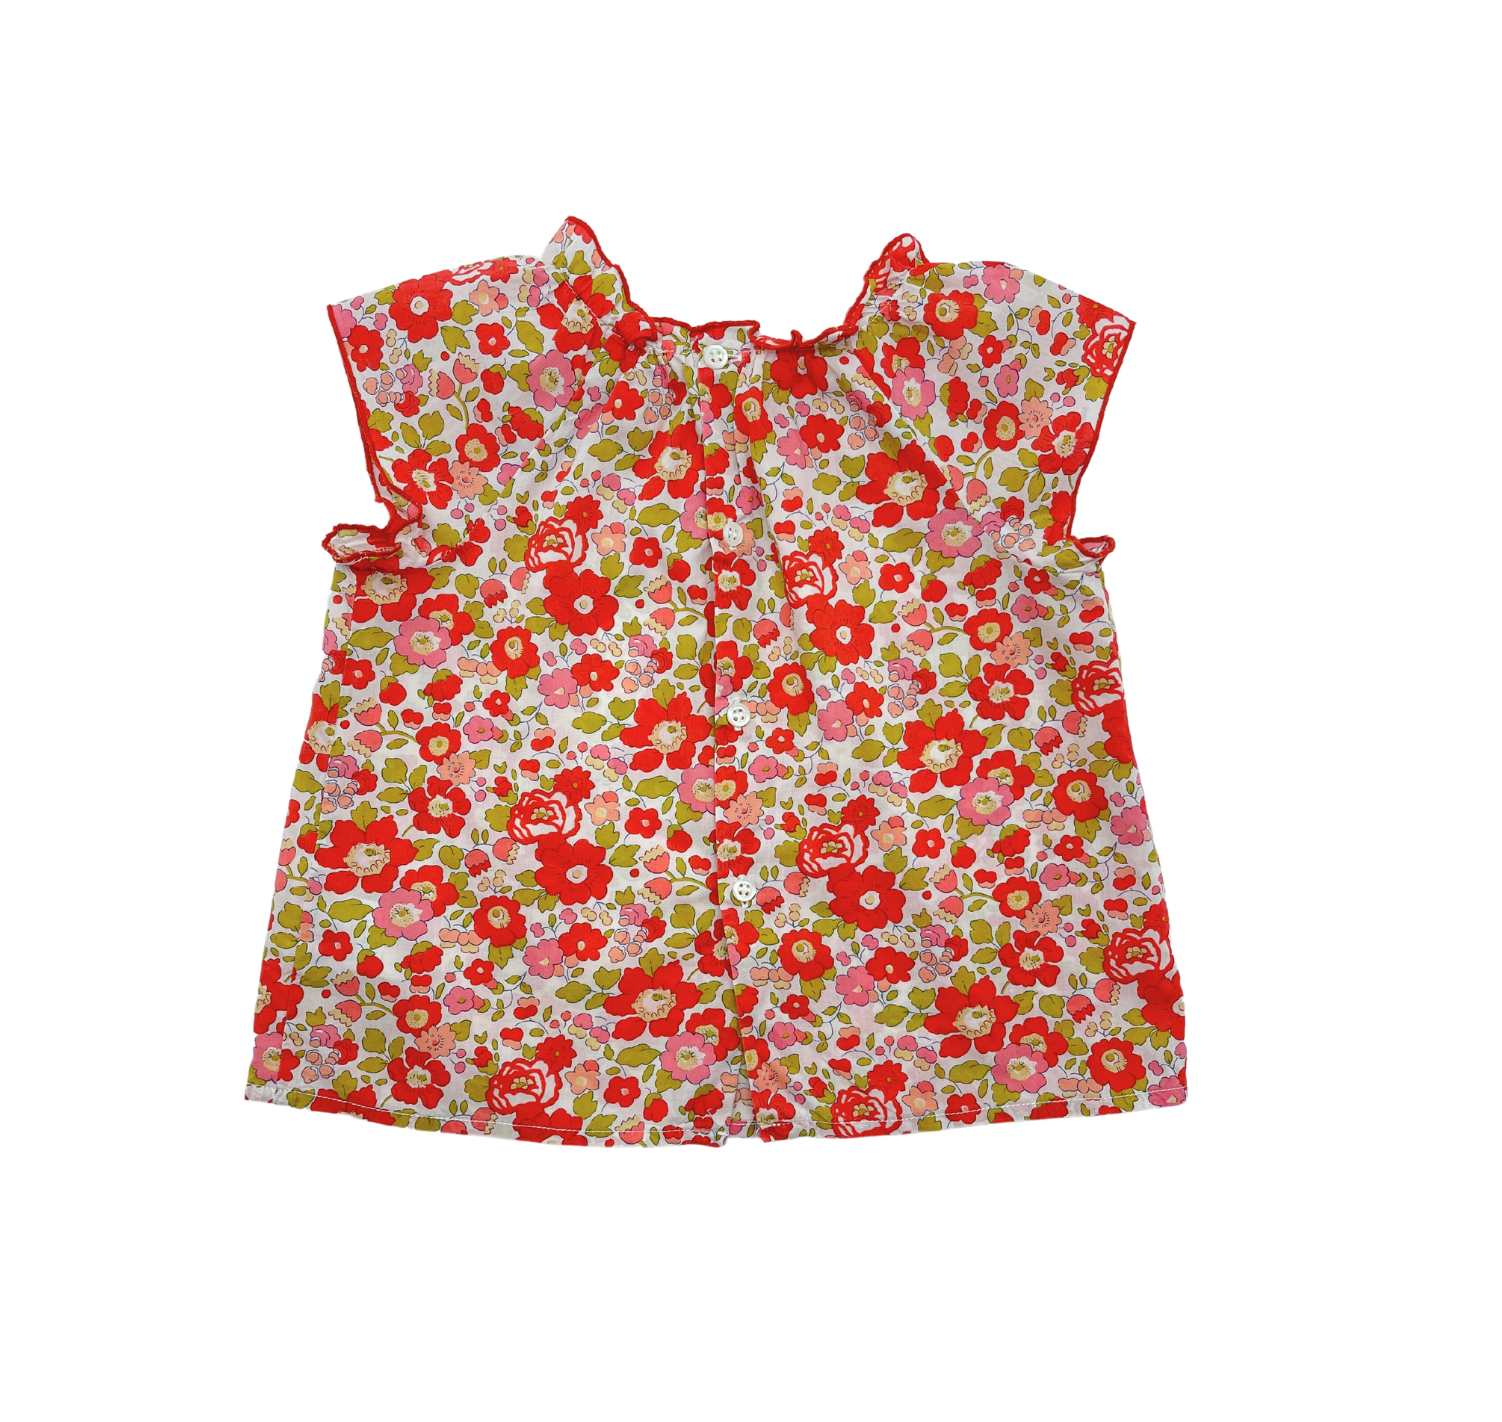 BONPOINT - Liberty floral blouse - 18 months